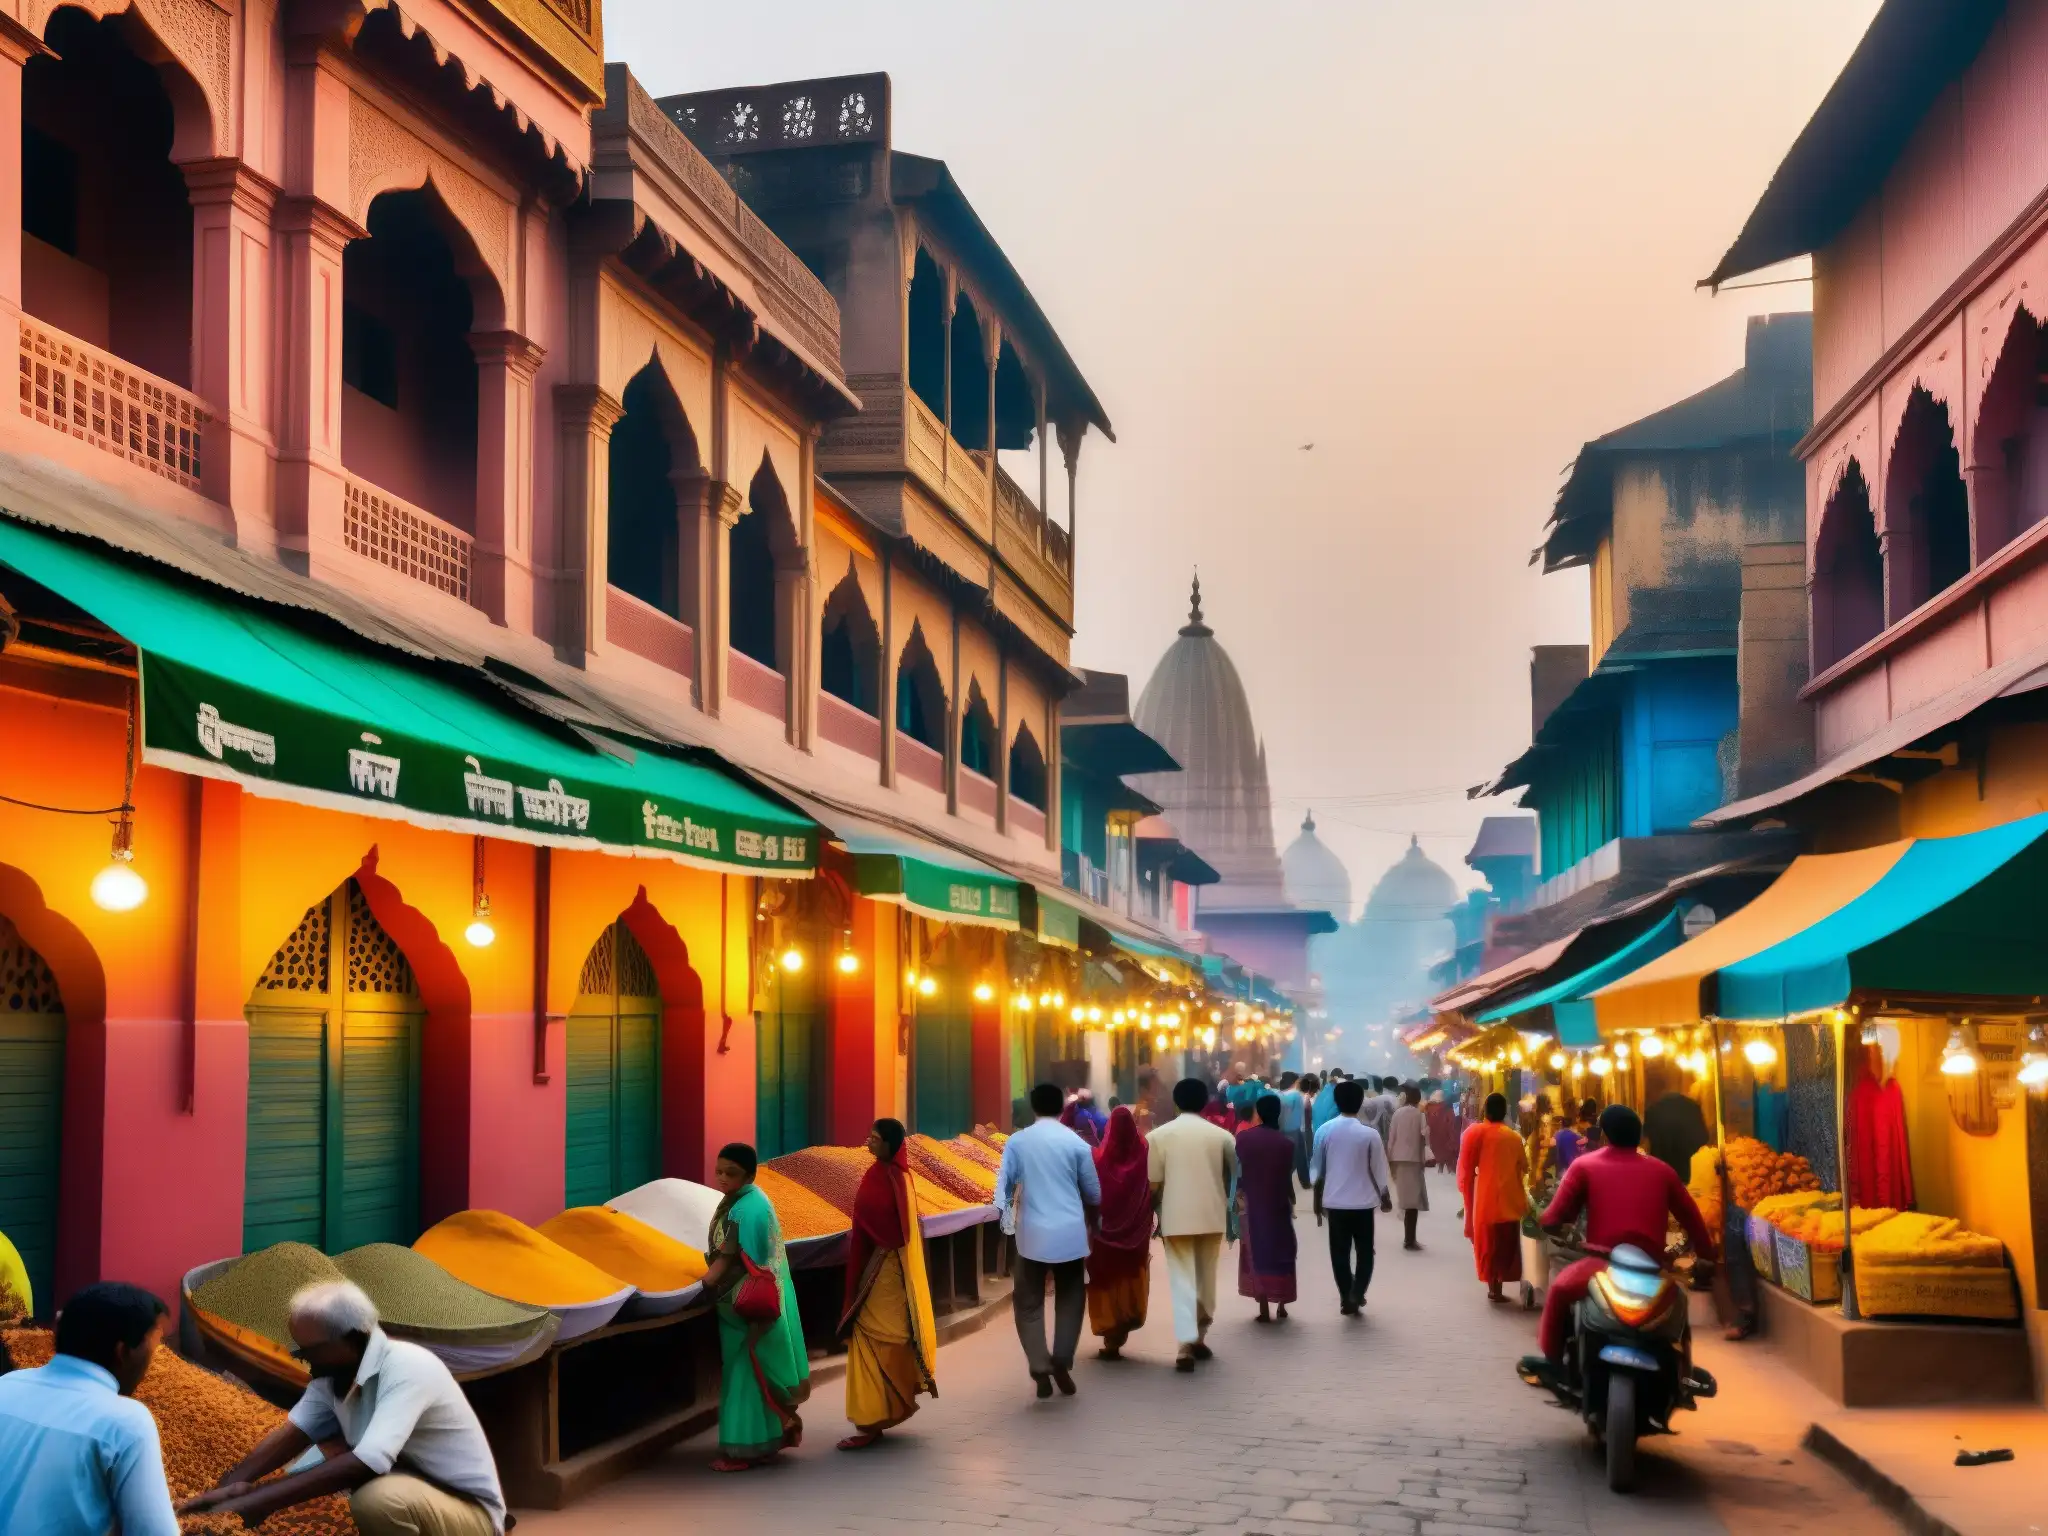 Un animado y estrecho callejón en la vieja ciudad de la India, lleno de edificios vibrantes y gente, creando una atmósfera misteriosa y encantadora